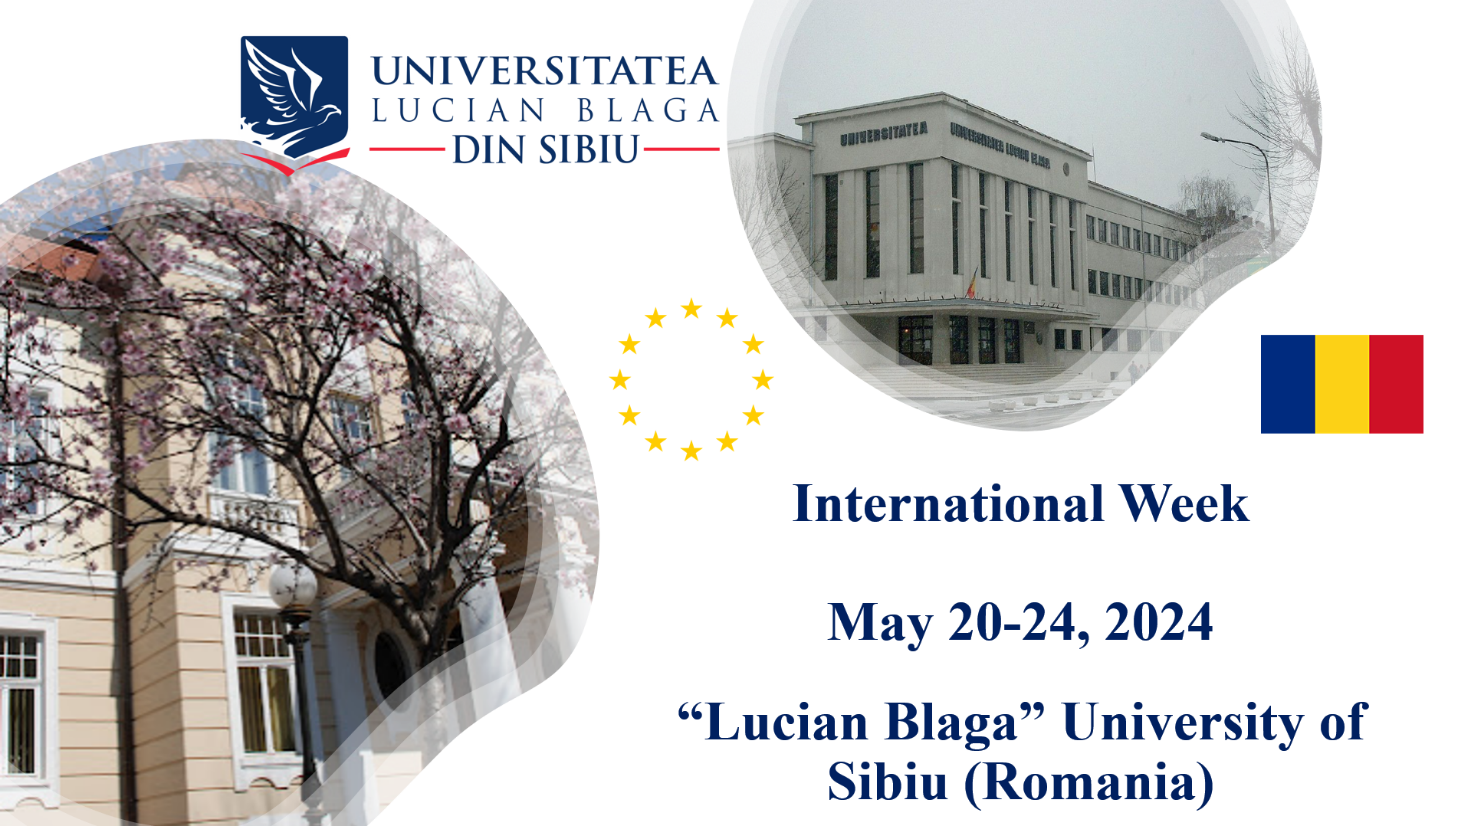 Науковців політехніки запрошують взяти участь у міжнародному заході на базі румунського університету-партнера «Lucian Blaga» University of Sibiu